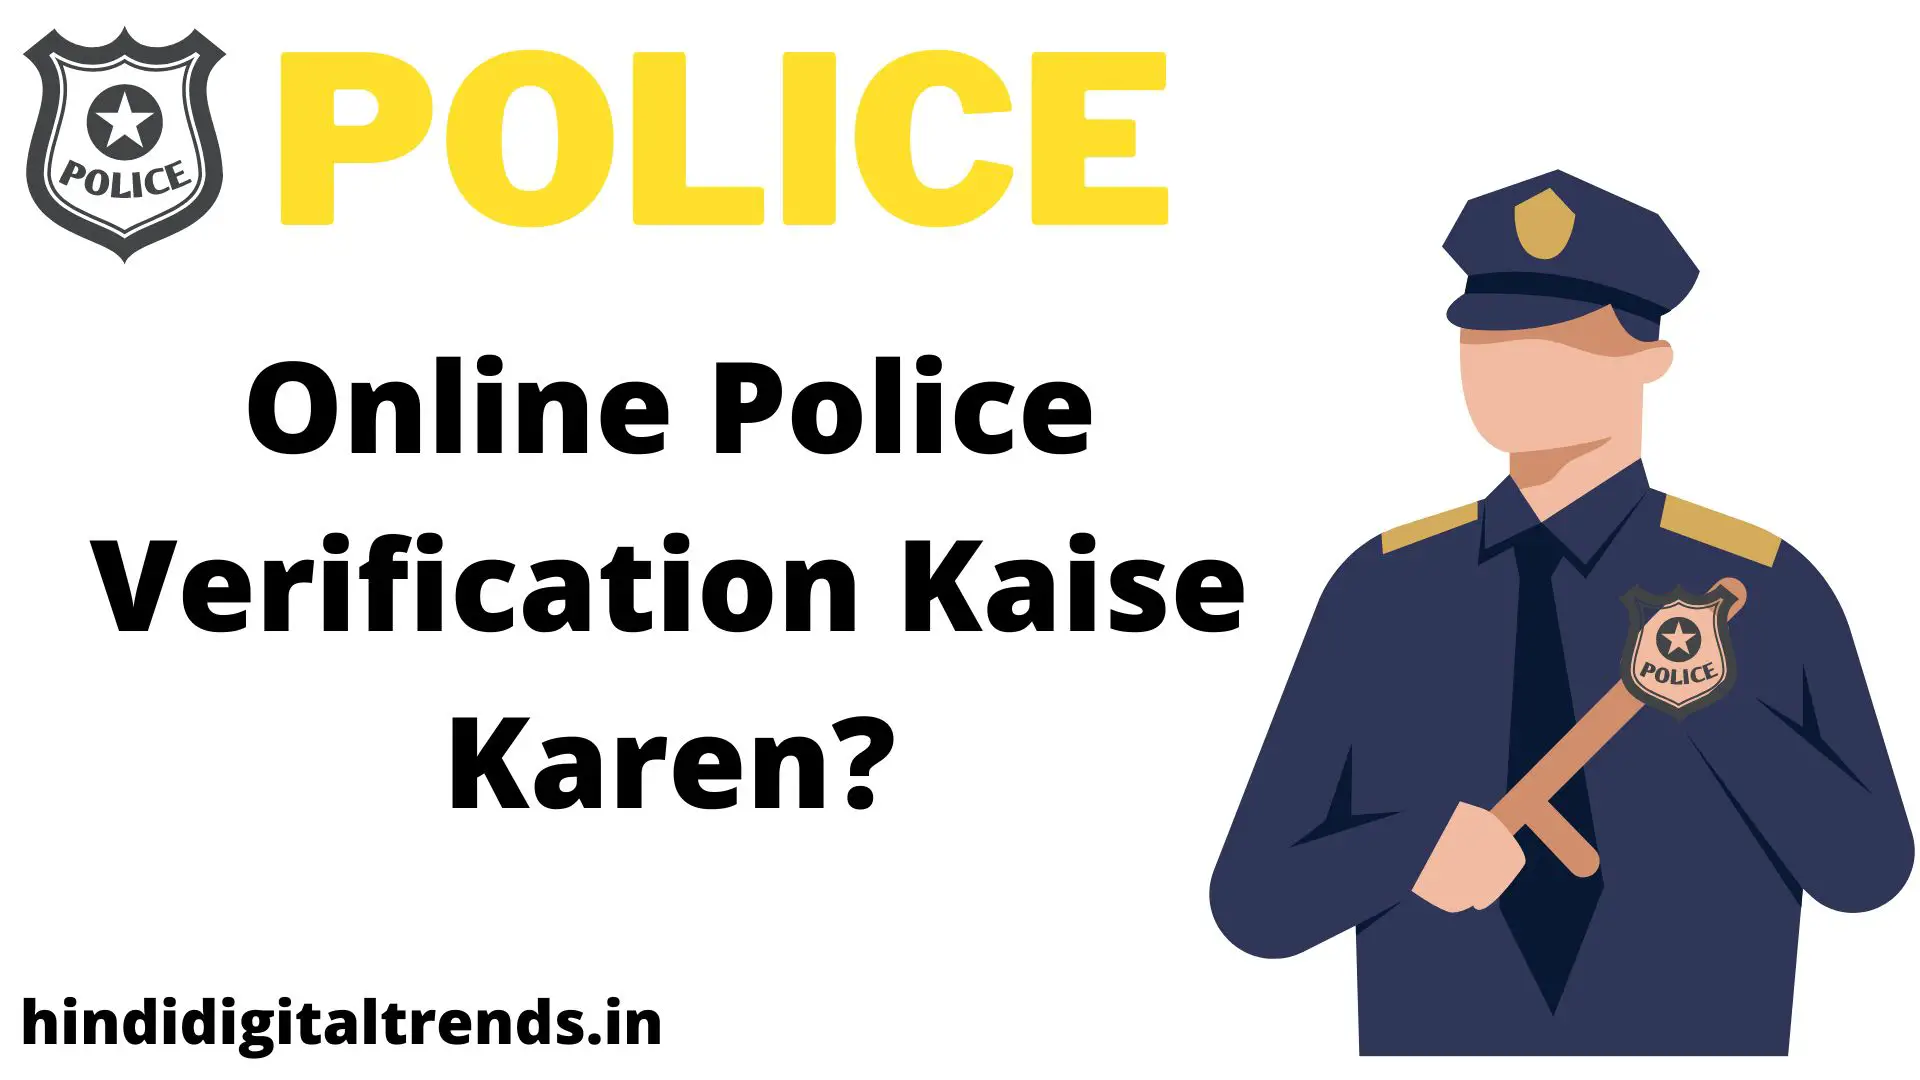 Online Police Verification Kaise Karen